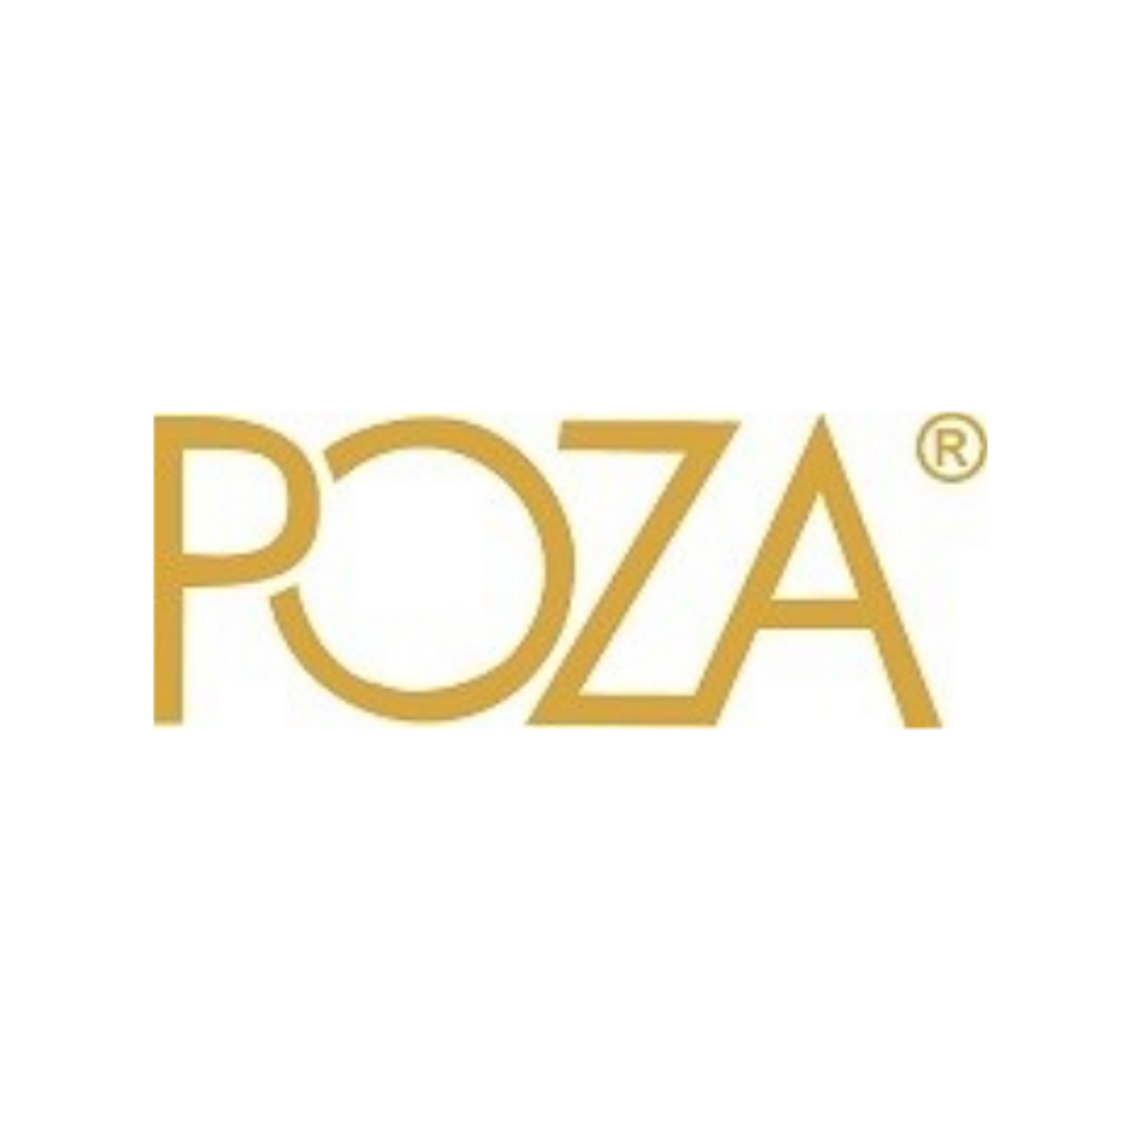 POZA - producent odzieży damskiej